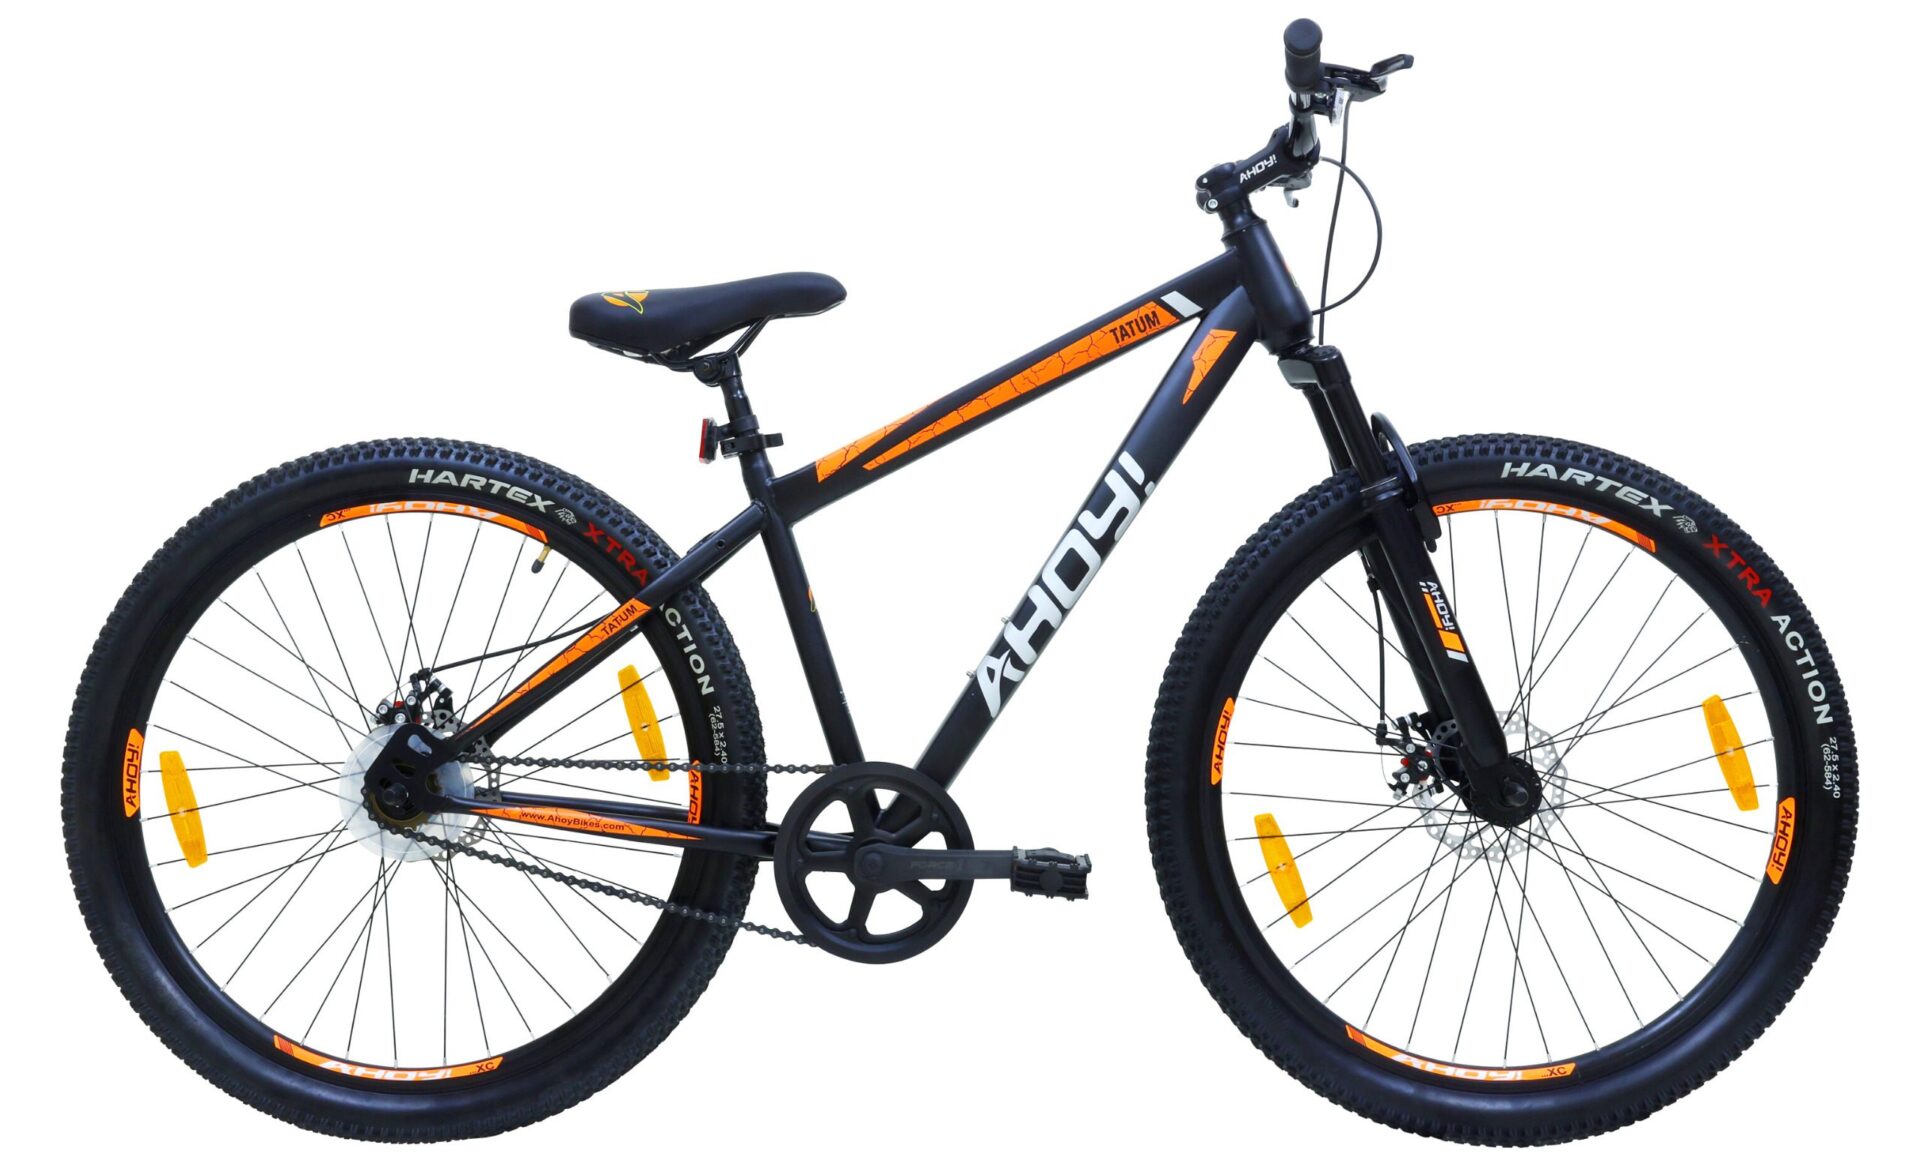 Tatum Non Gear Bike 27.5T | Buy Black Non Gear Cycle for Men